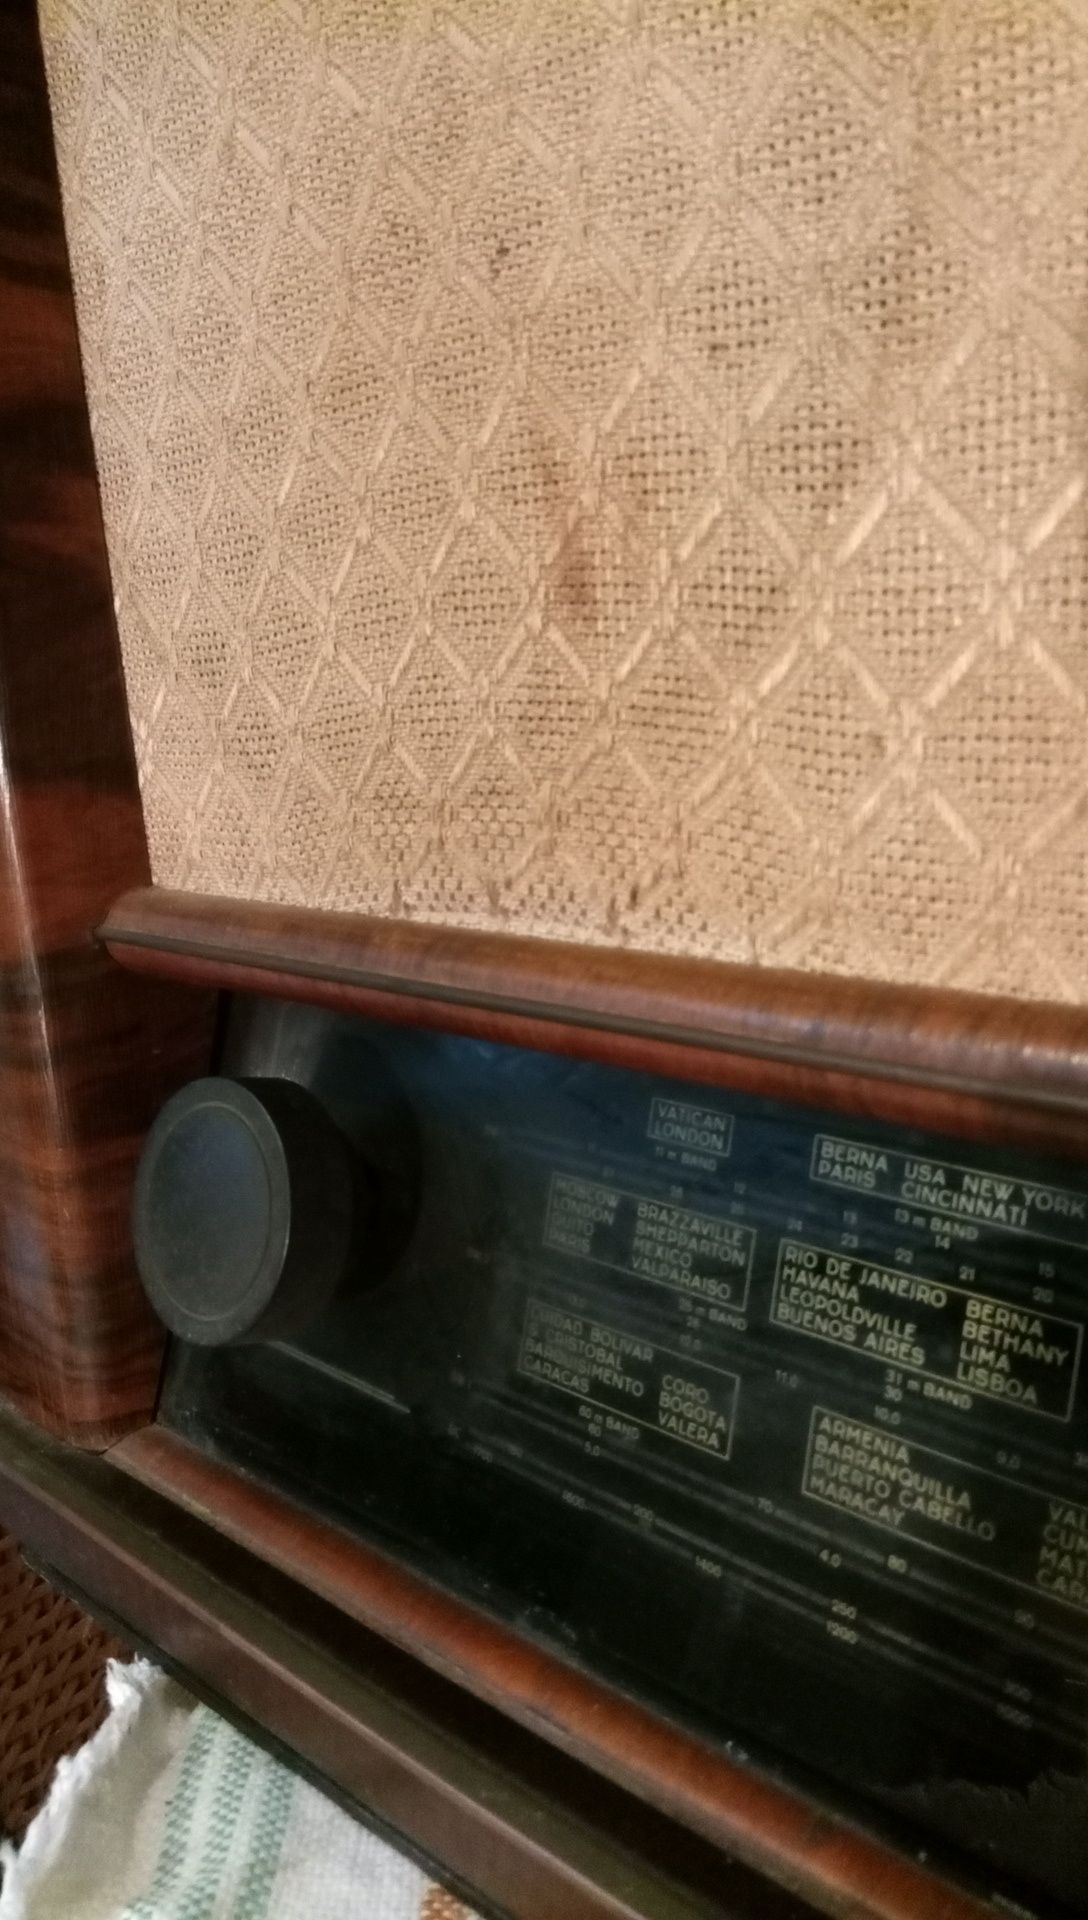 Rádio antigo e raro a válvulas nordmend BREMEN - 187 WU